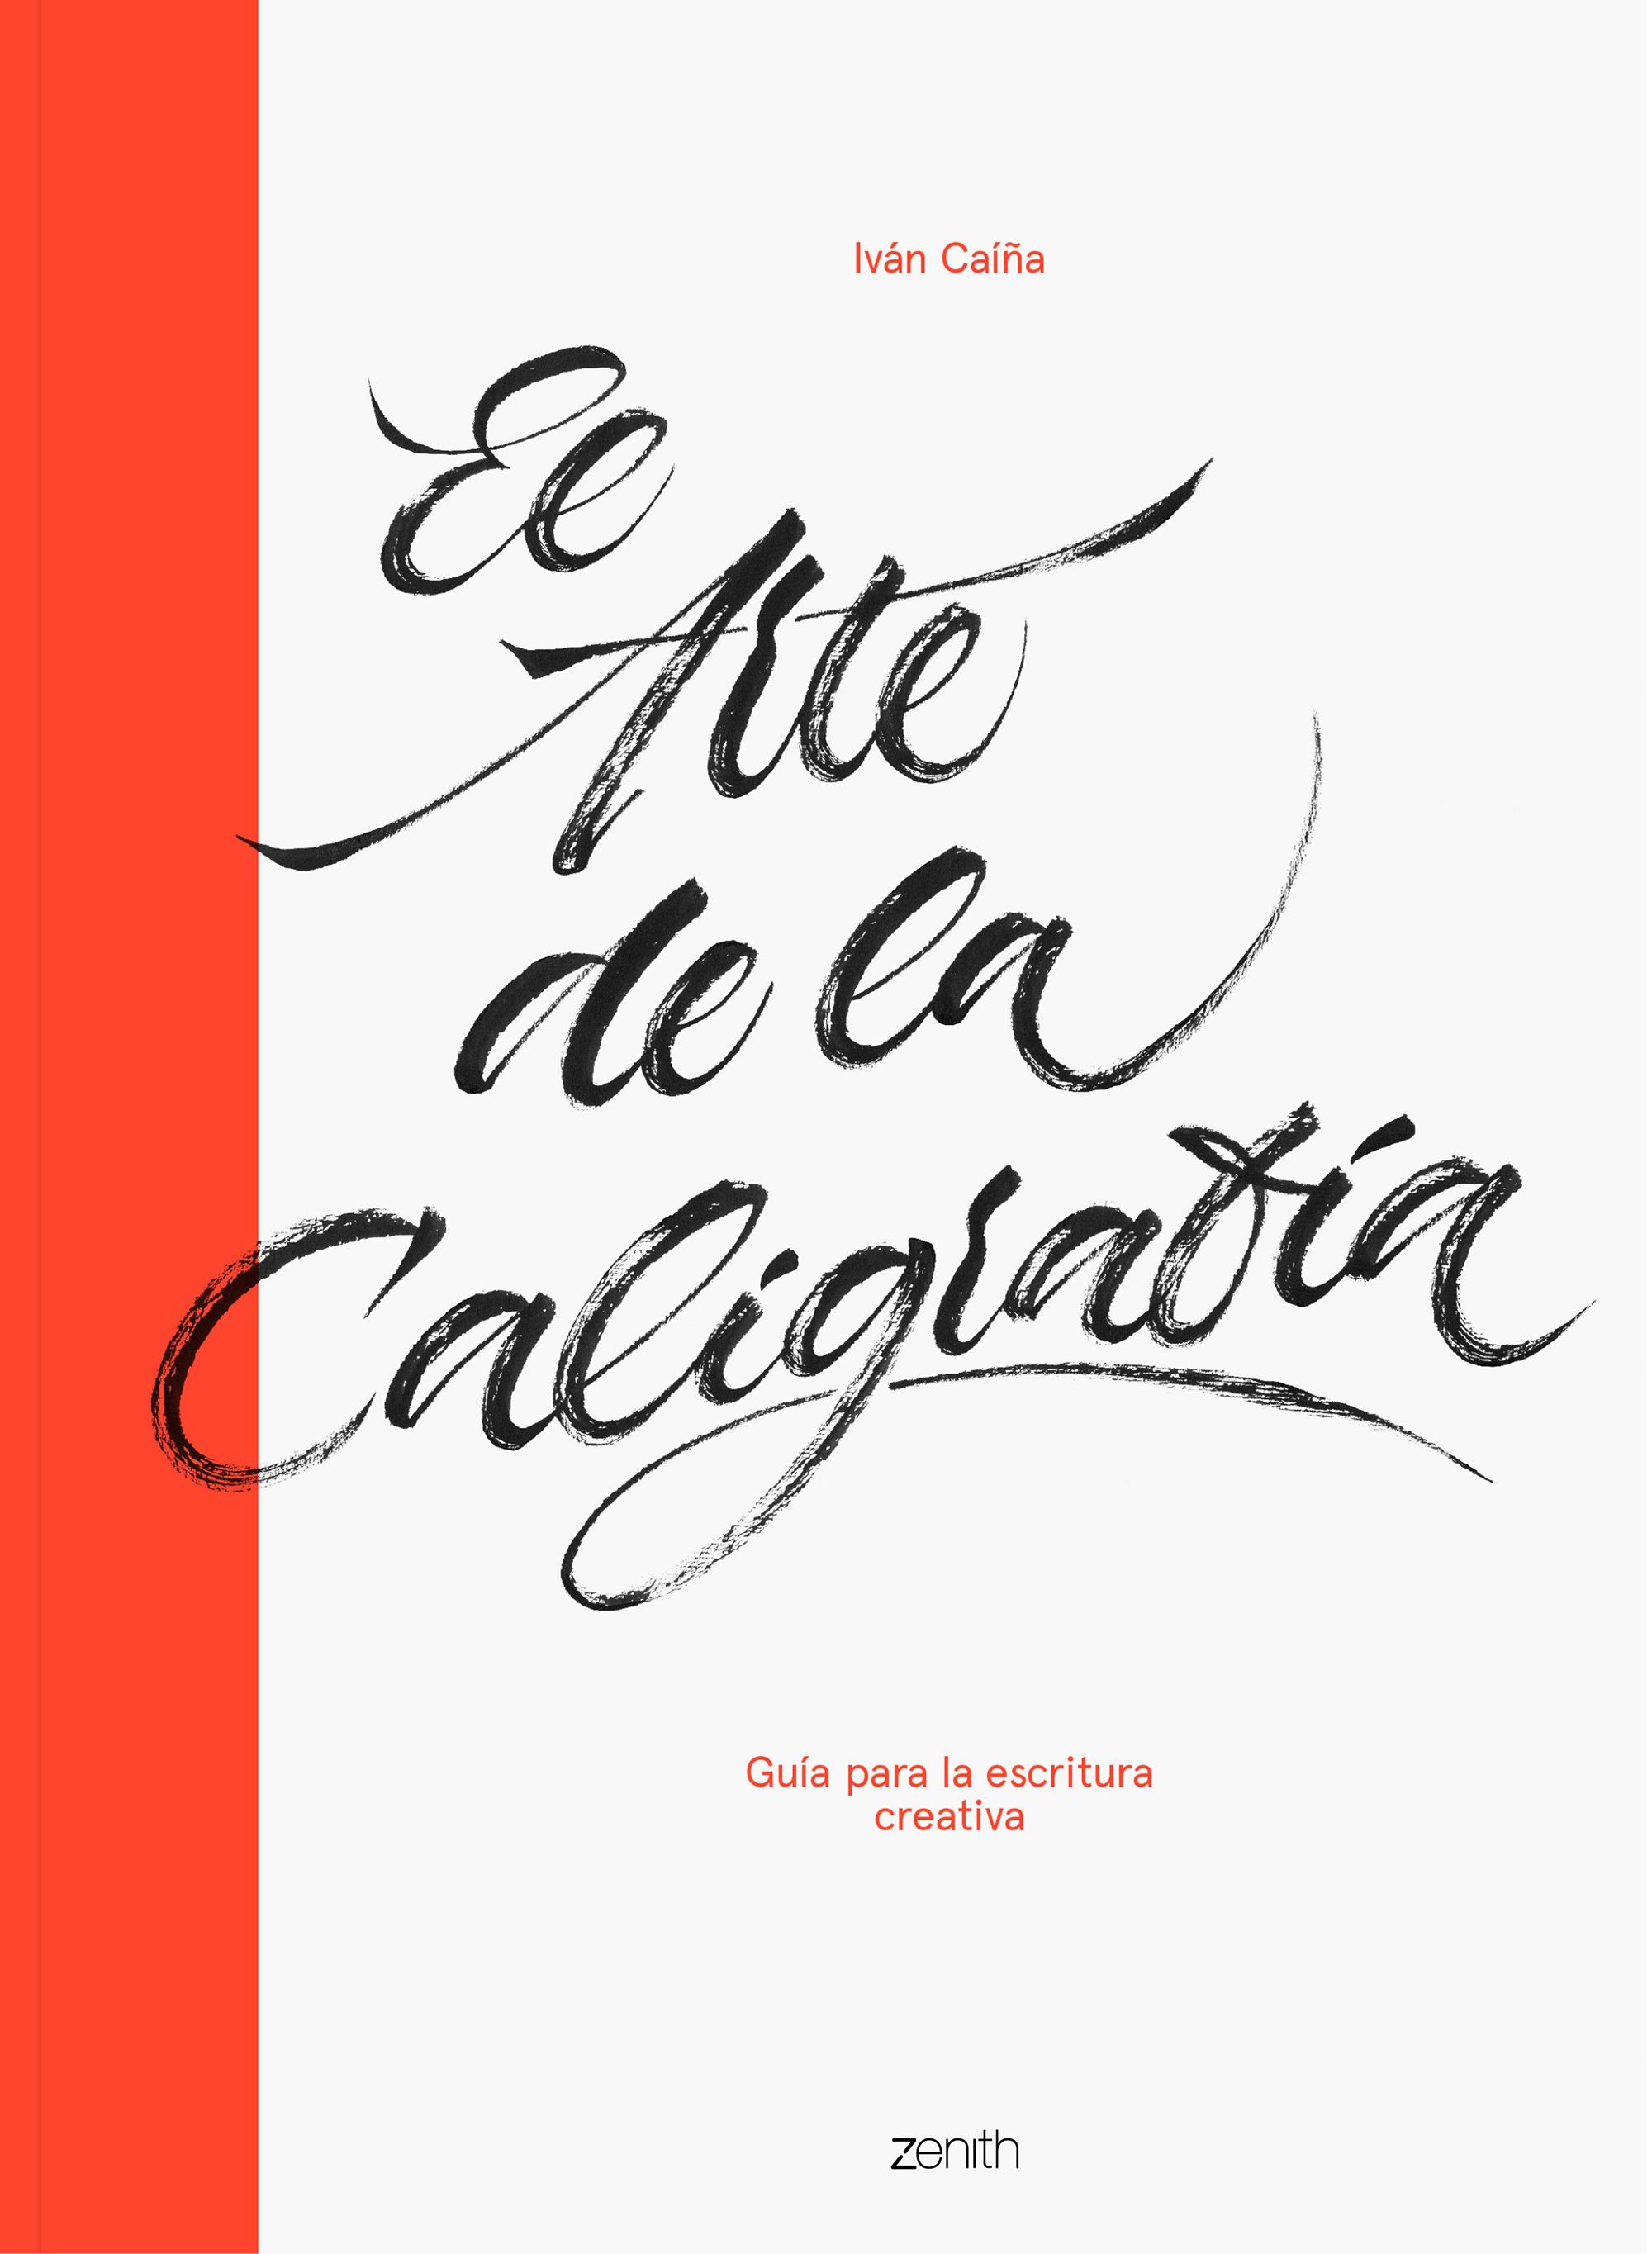 El arte de la caligrafía, un libro para relejarse mediante la creación de letras